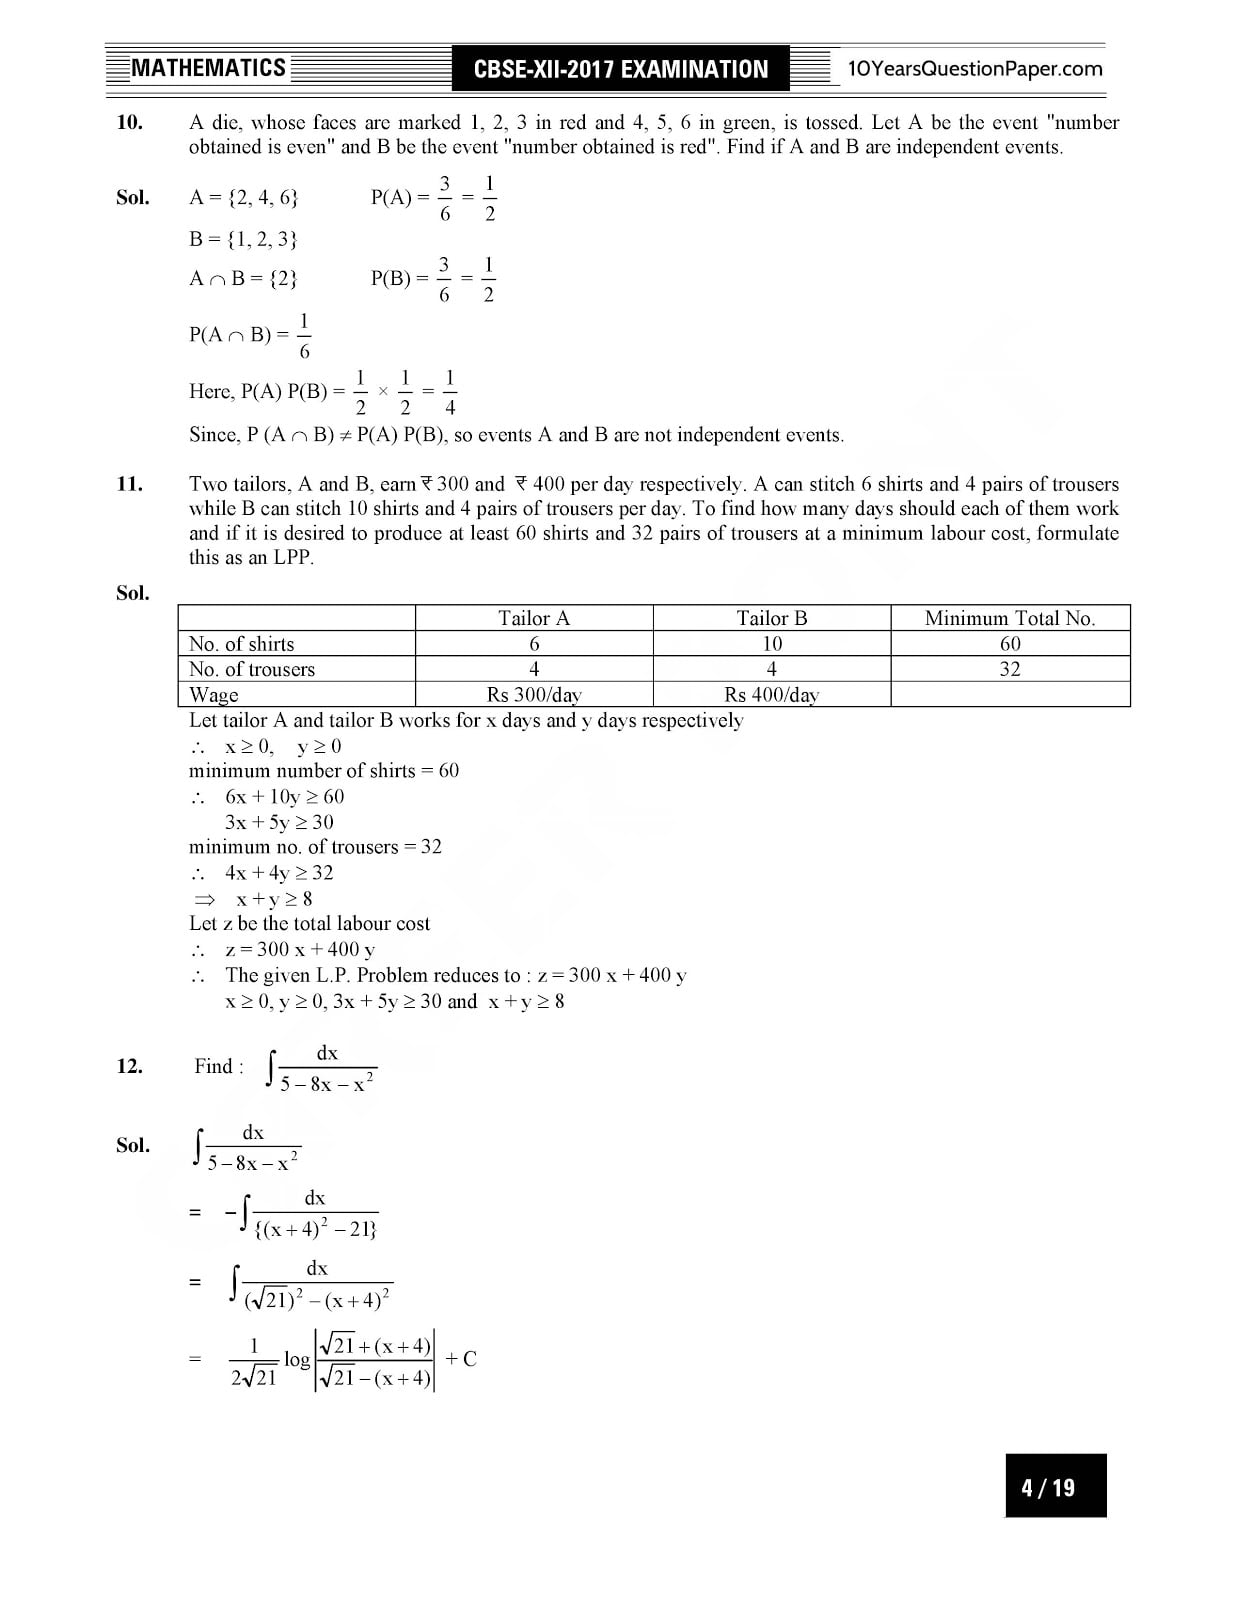 CBSE Class 12 Mathematics 2017 Solved Paper